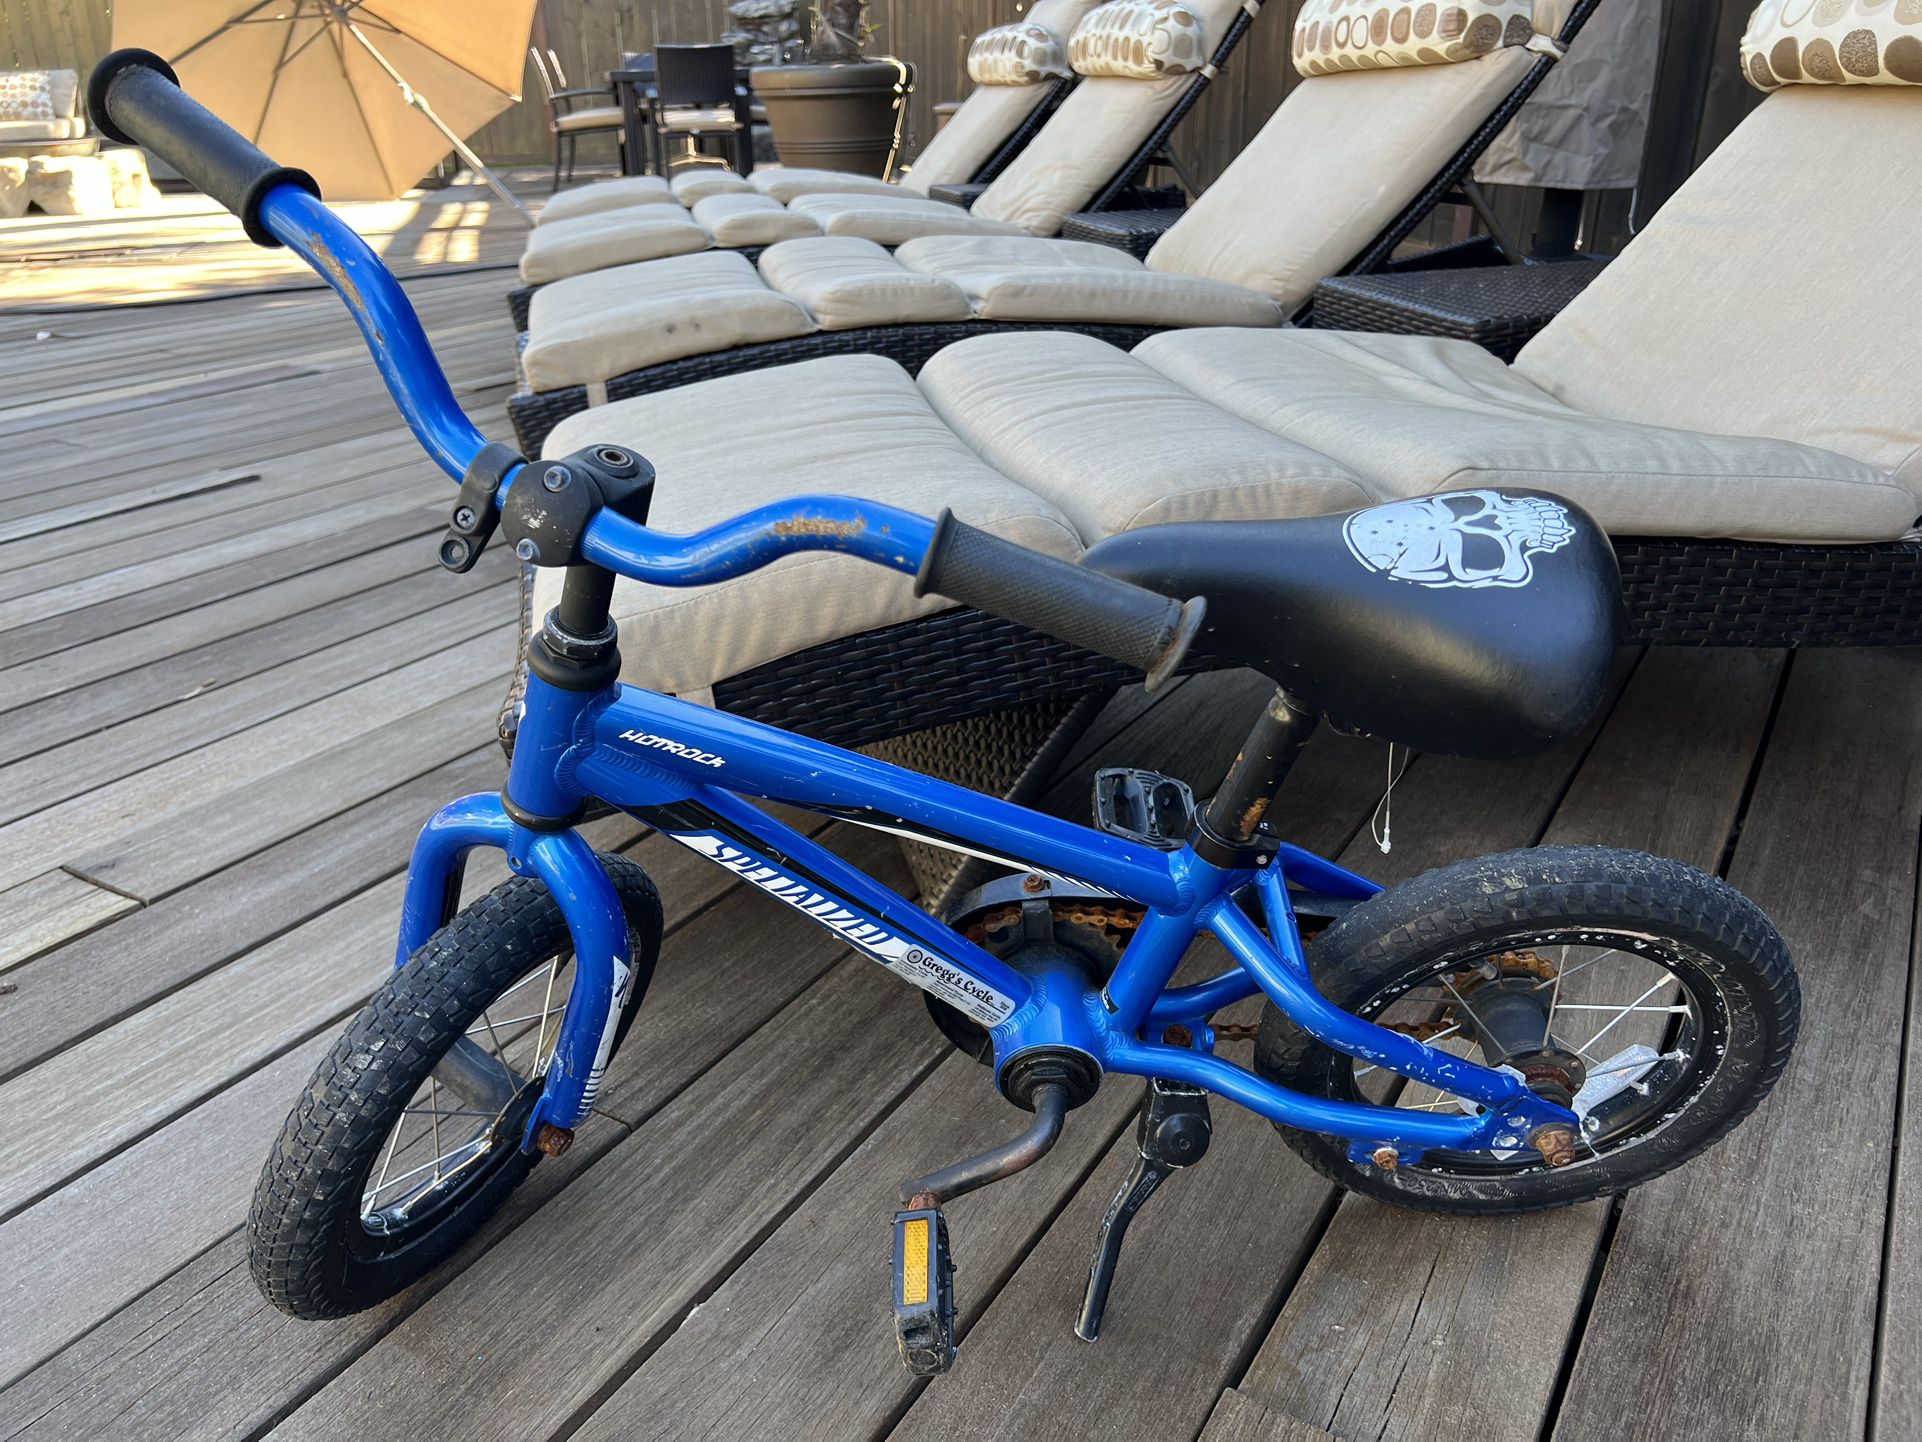 Mini Specialized Bike for kids